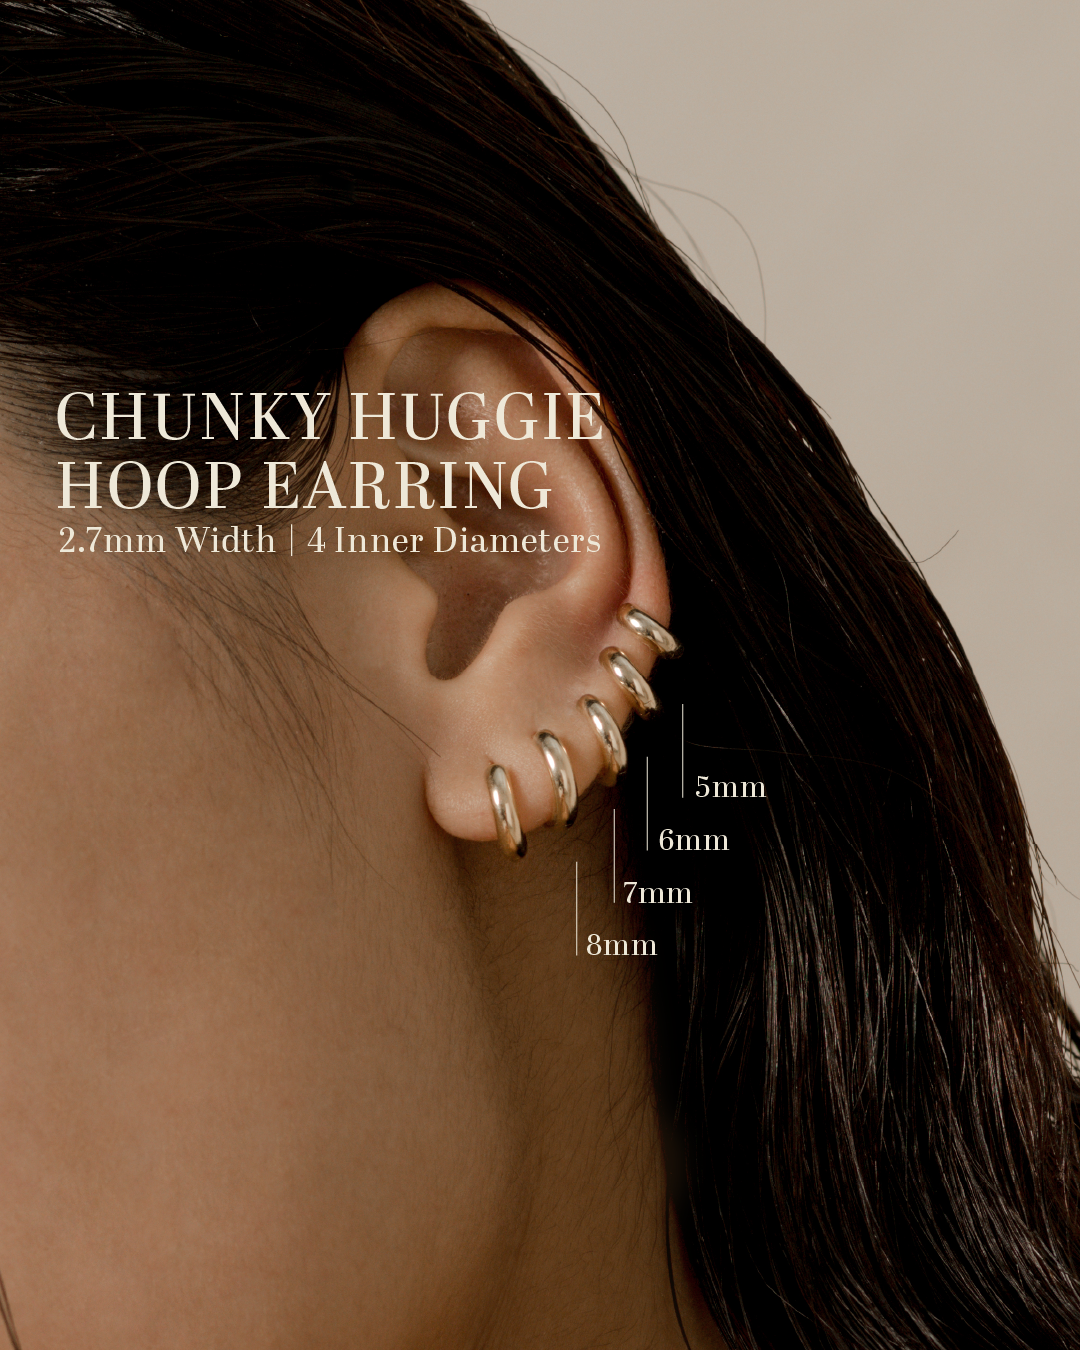 Chunky Huggie Hoop Earring - 7mm